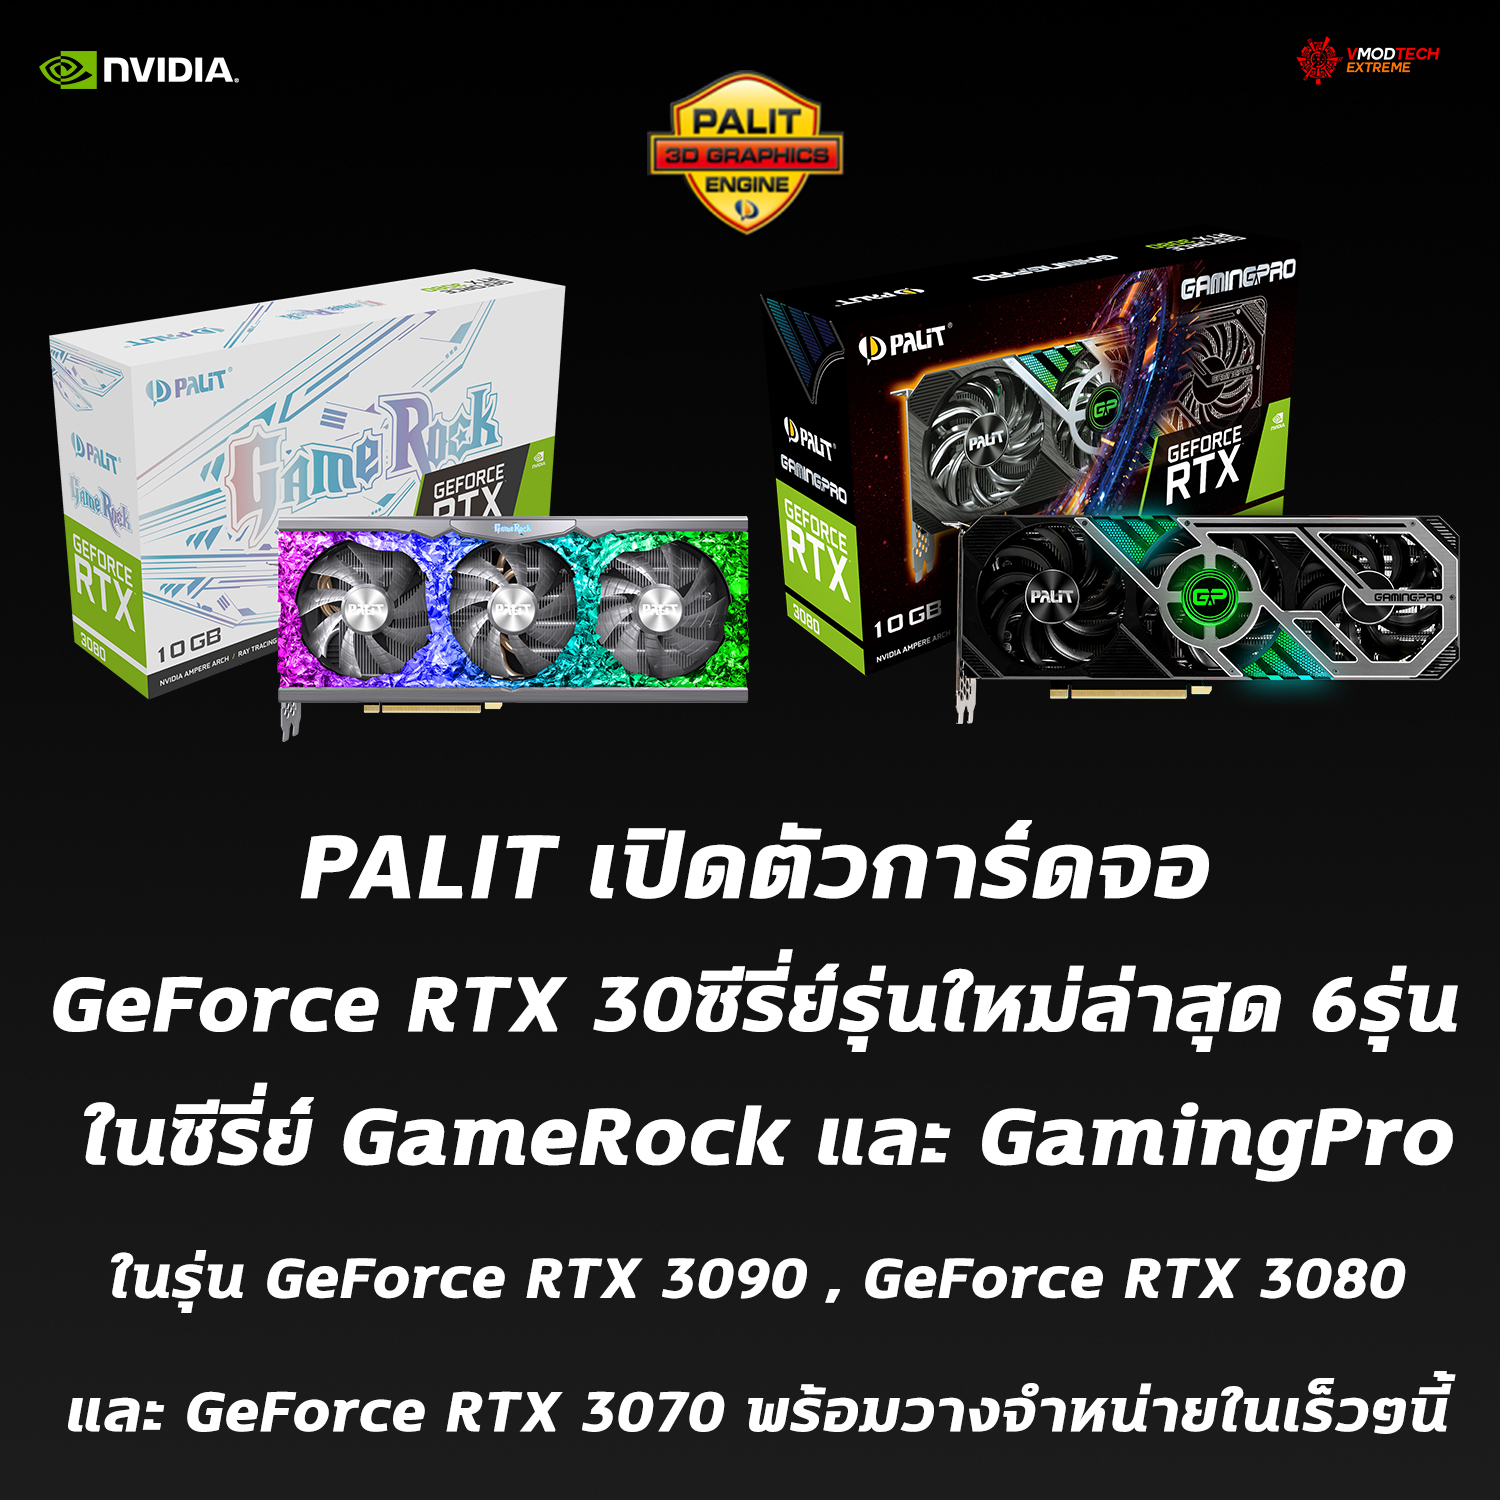 palit geforce rtx 30series gamerock gamingpro geforce rtx 3090 geforce rtx 3080 geforce rtx 3070 PALIT เปิดตัวการ์ดจอ GeForce RTX 30ซีรี่ย์รุ่นใหม่ล่าสุด 6รุ่น ในซีรี่ย์ GameRock และ GamingPro ในรุ่น GeForce RTX 3090 , GeForce RTX 3080 และ GeForce RTX 3070 พร้อมวางจำหน่ายในเร็วๆนี้ 